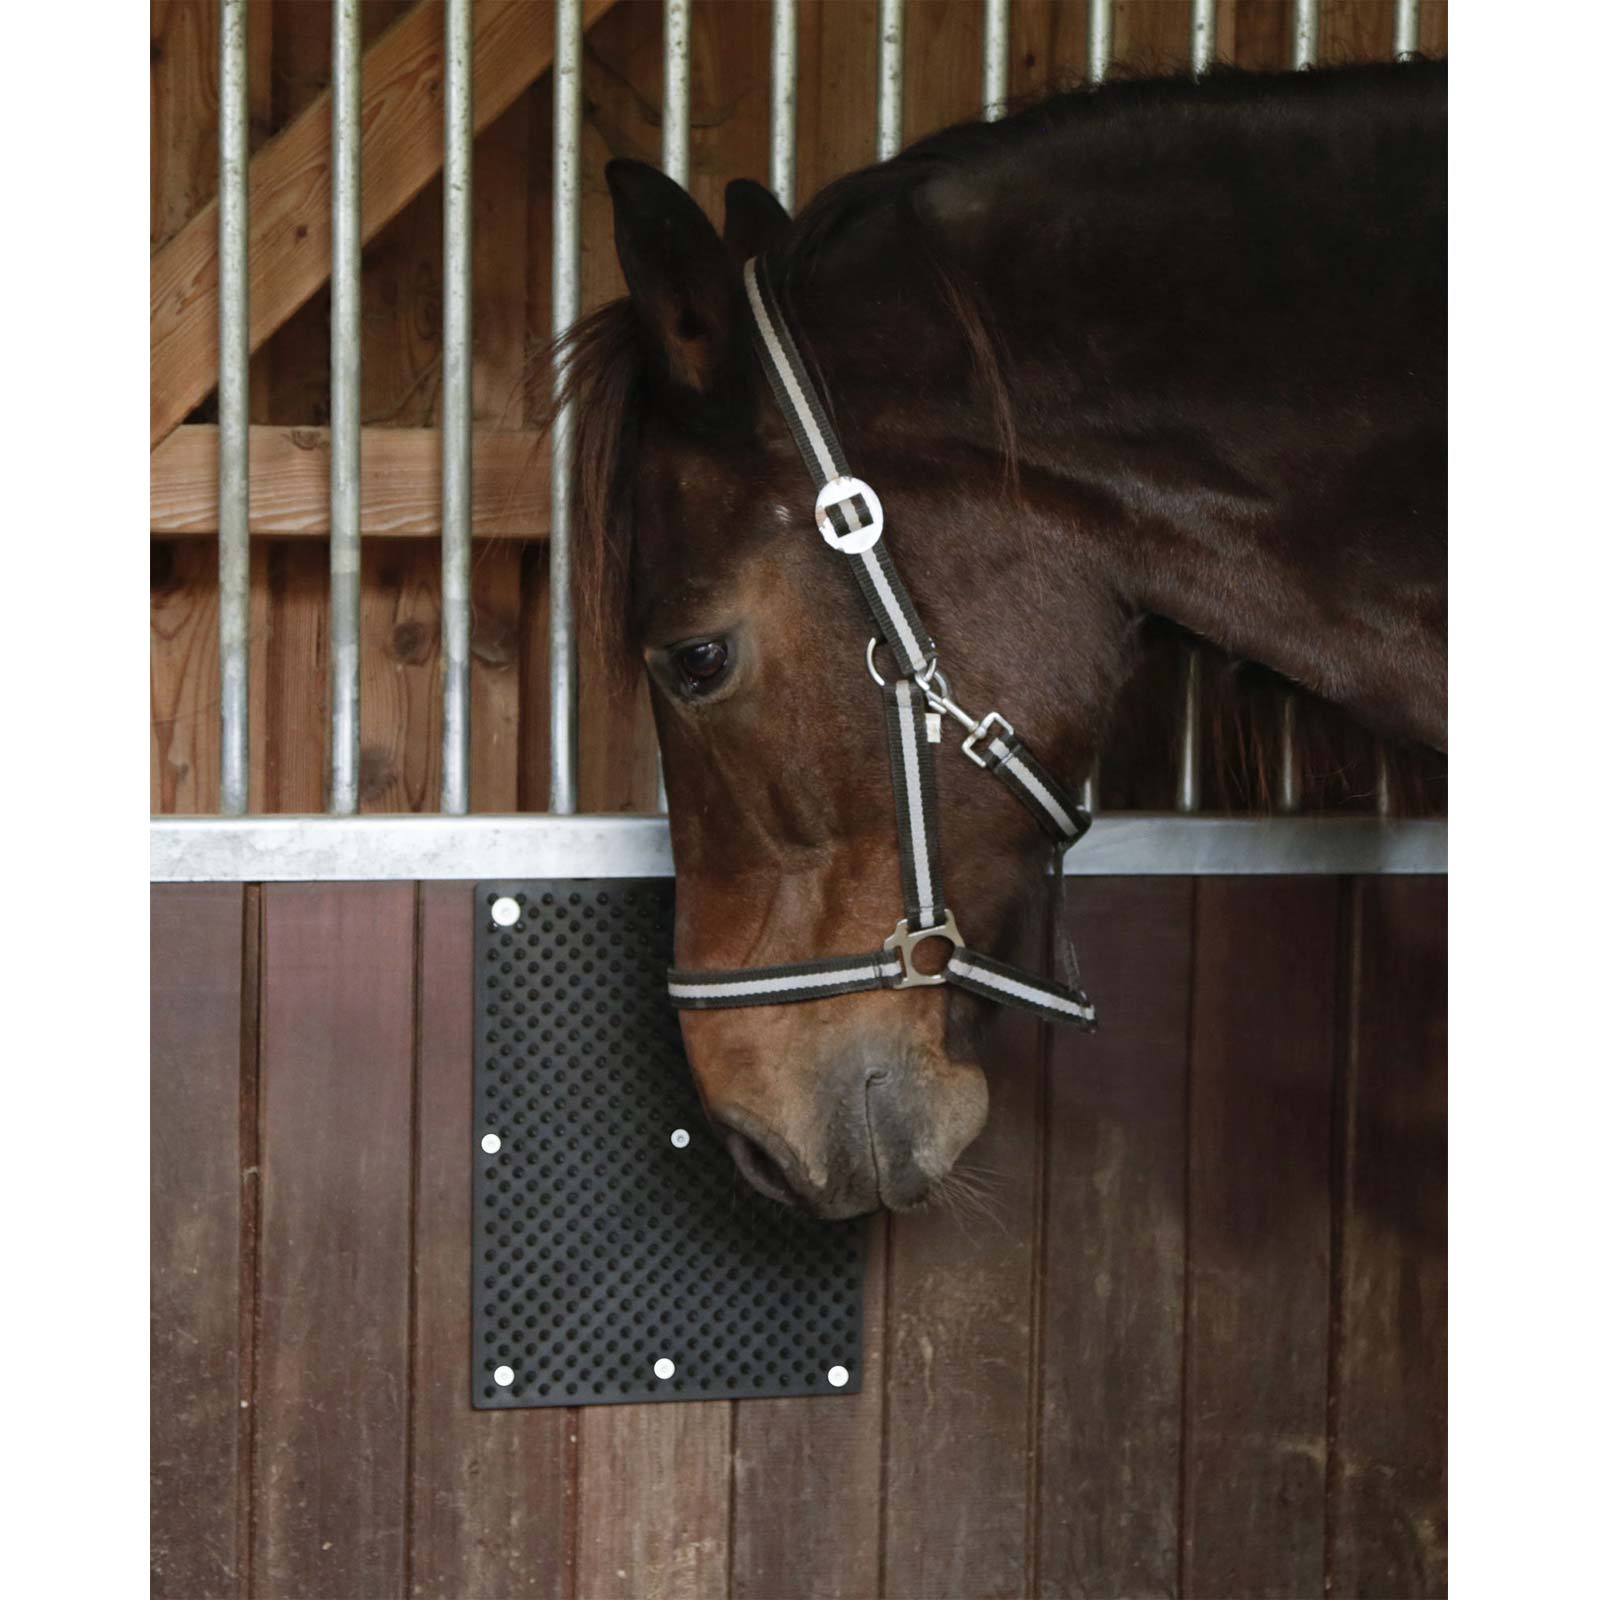 Tappetino tiragraffi in gomma naturale per cavalli e bovini 40 x 30 cm